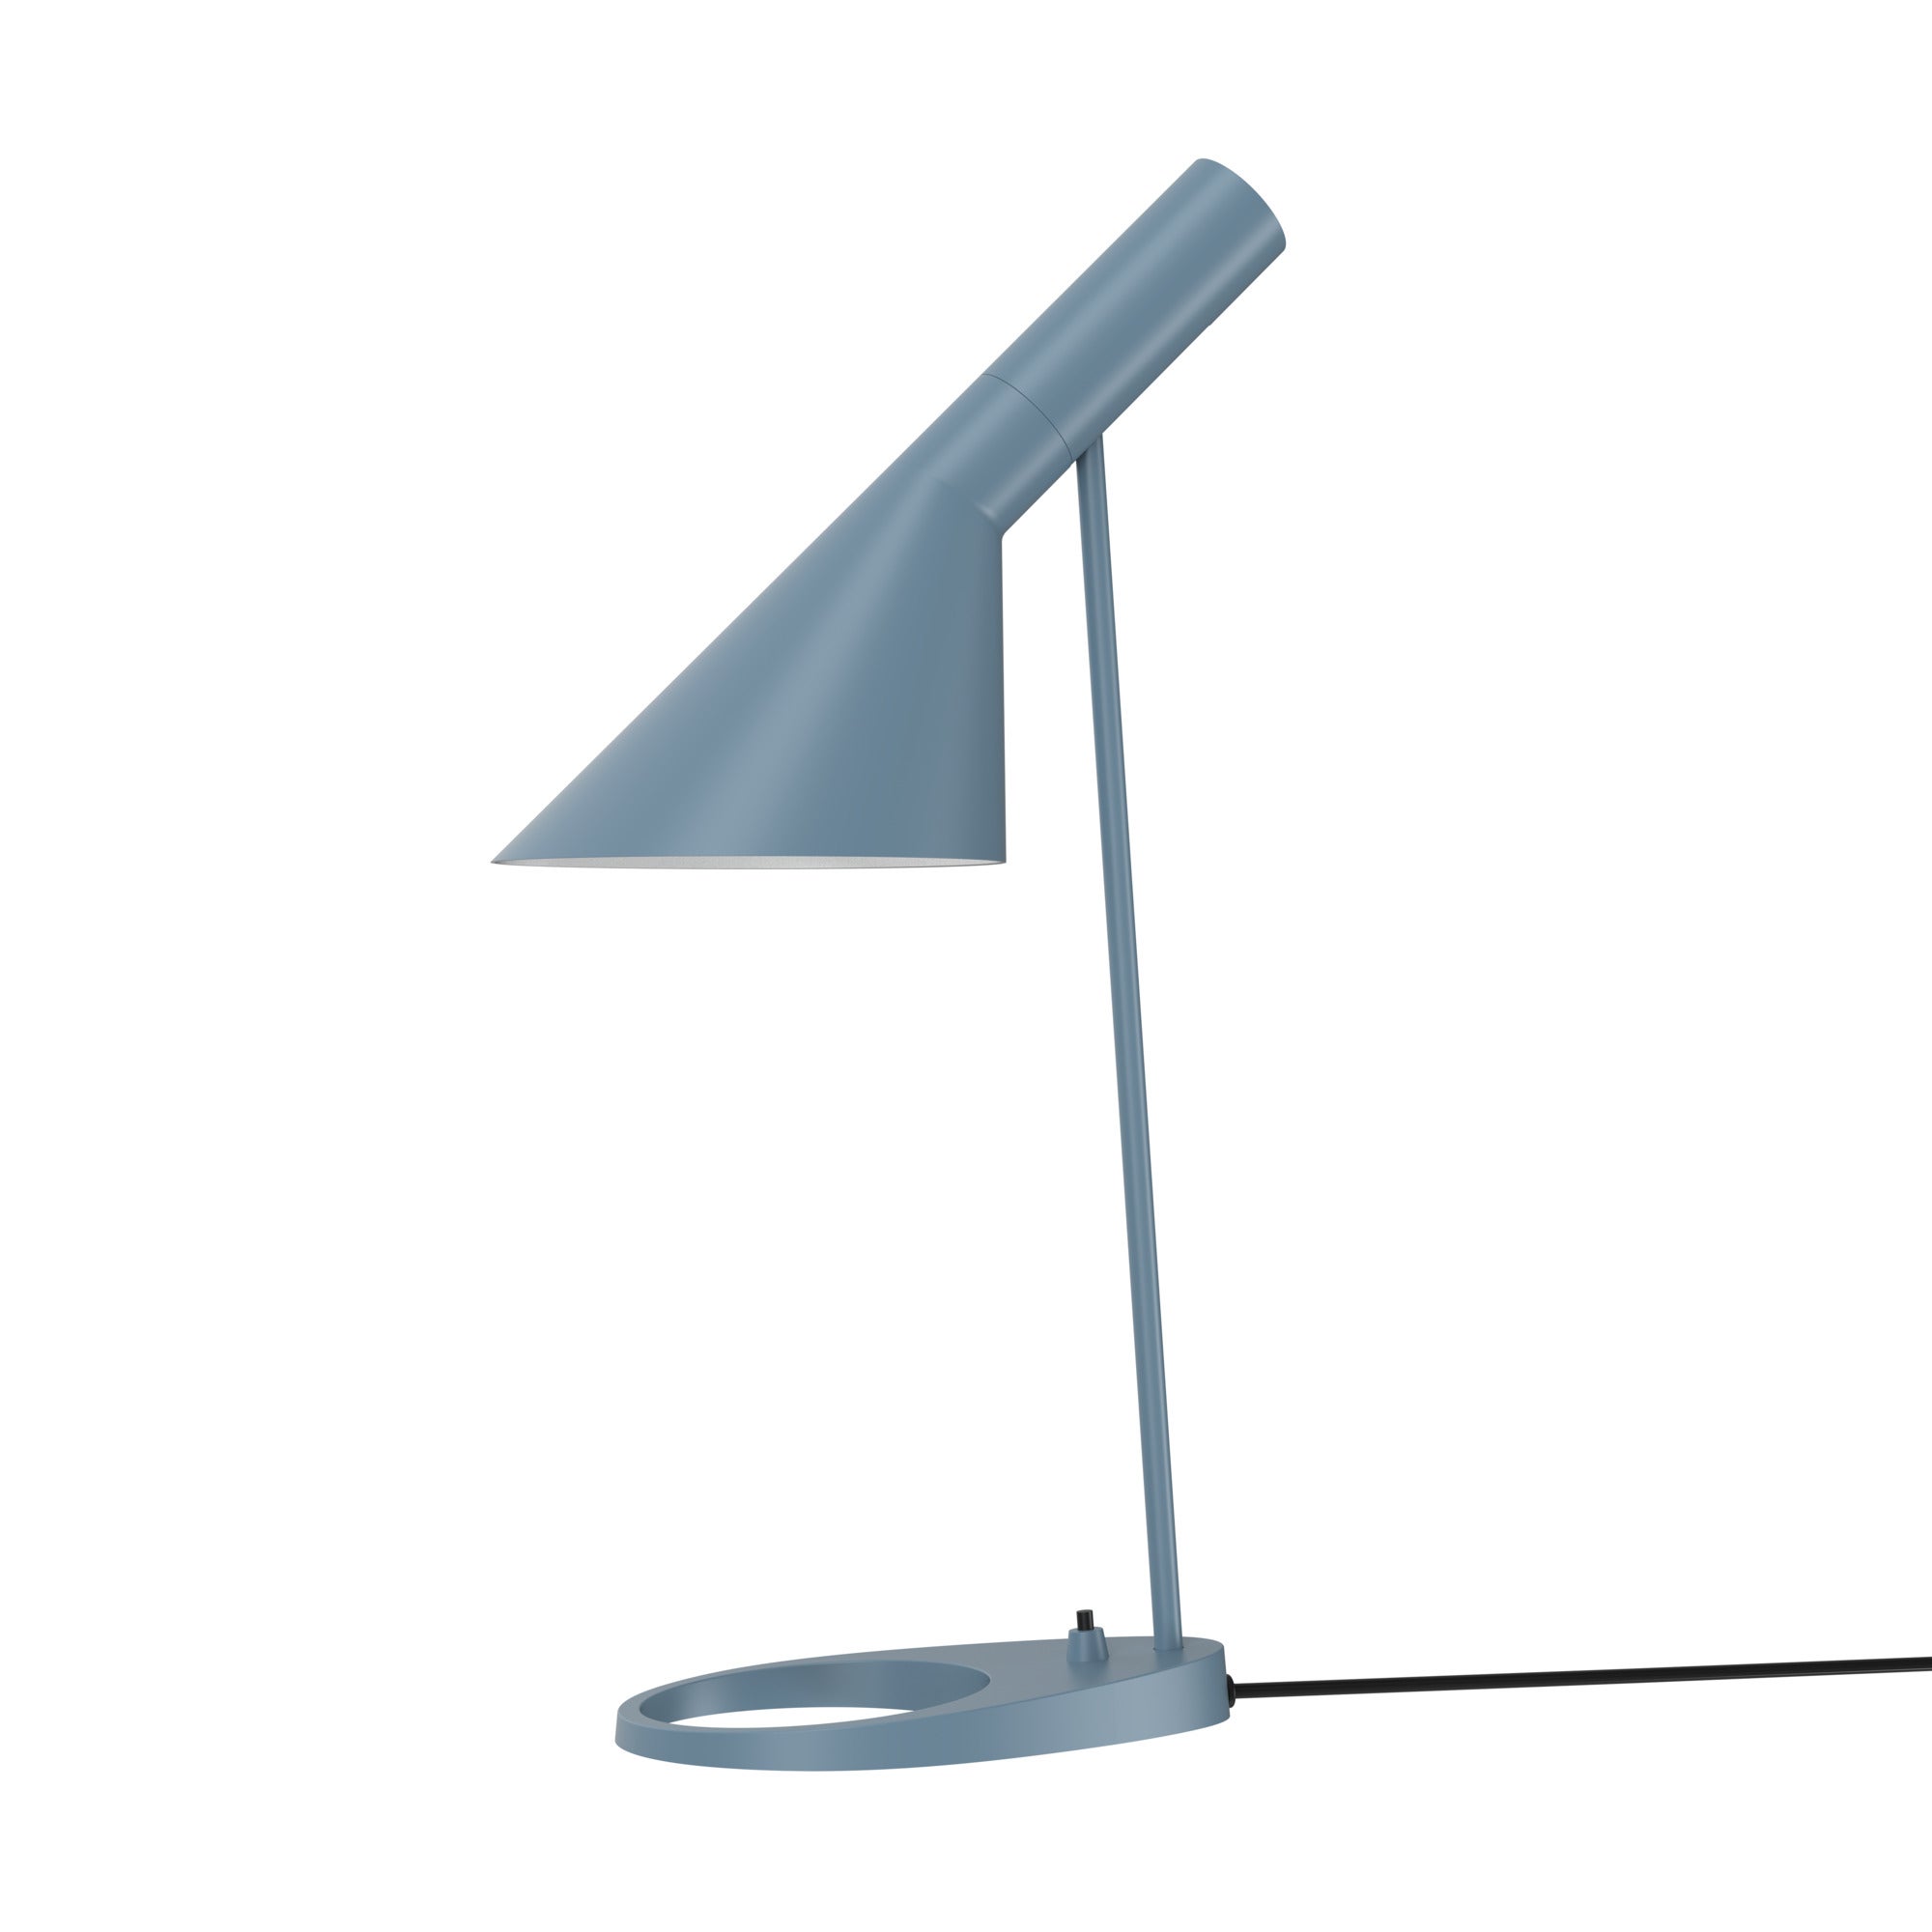 Arne Jacobsen AJ Table Lamp in Dusty Blue for Louis Poulsen